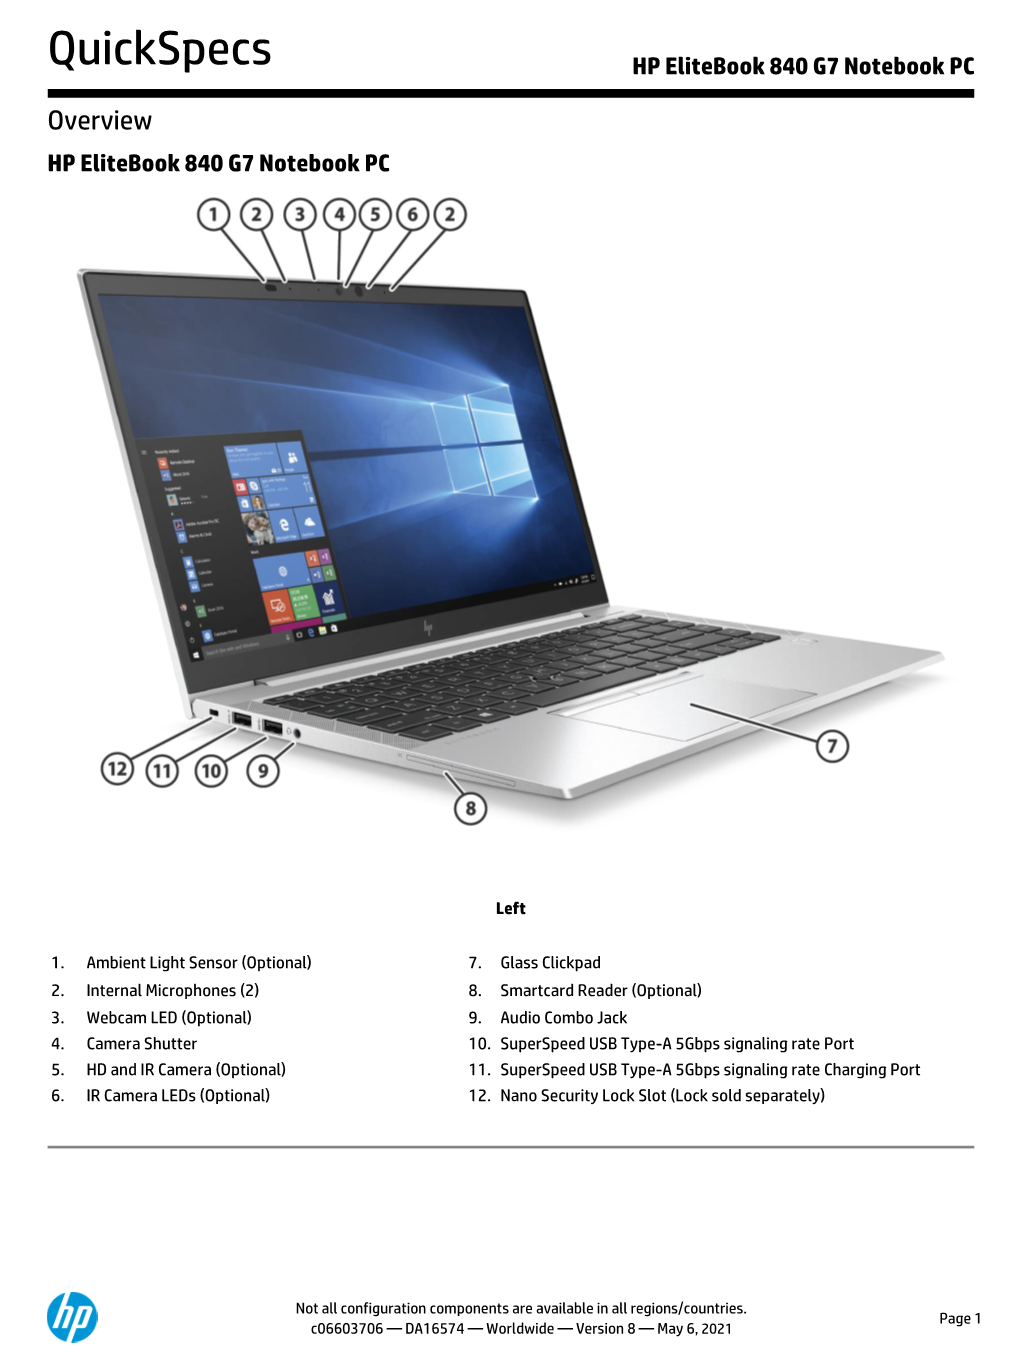 HP Elitebook 840 G7 Notebook PC, Worlwide, Quickspec